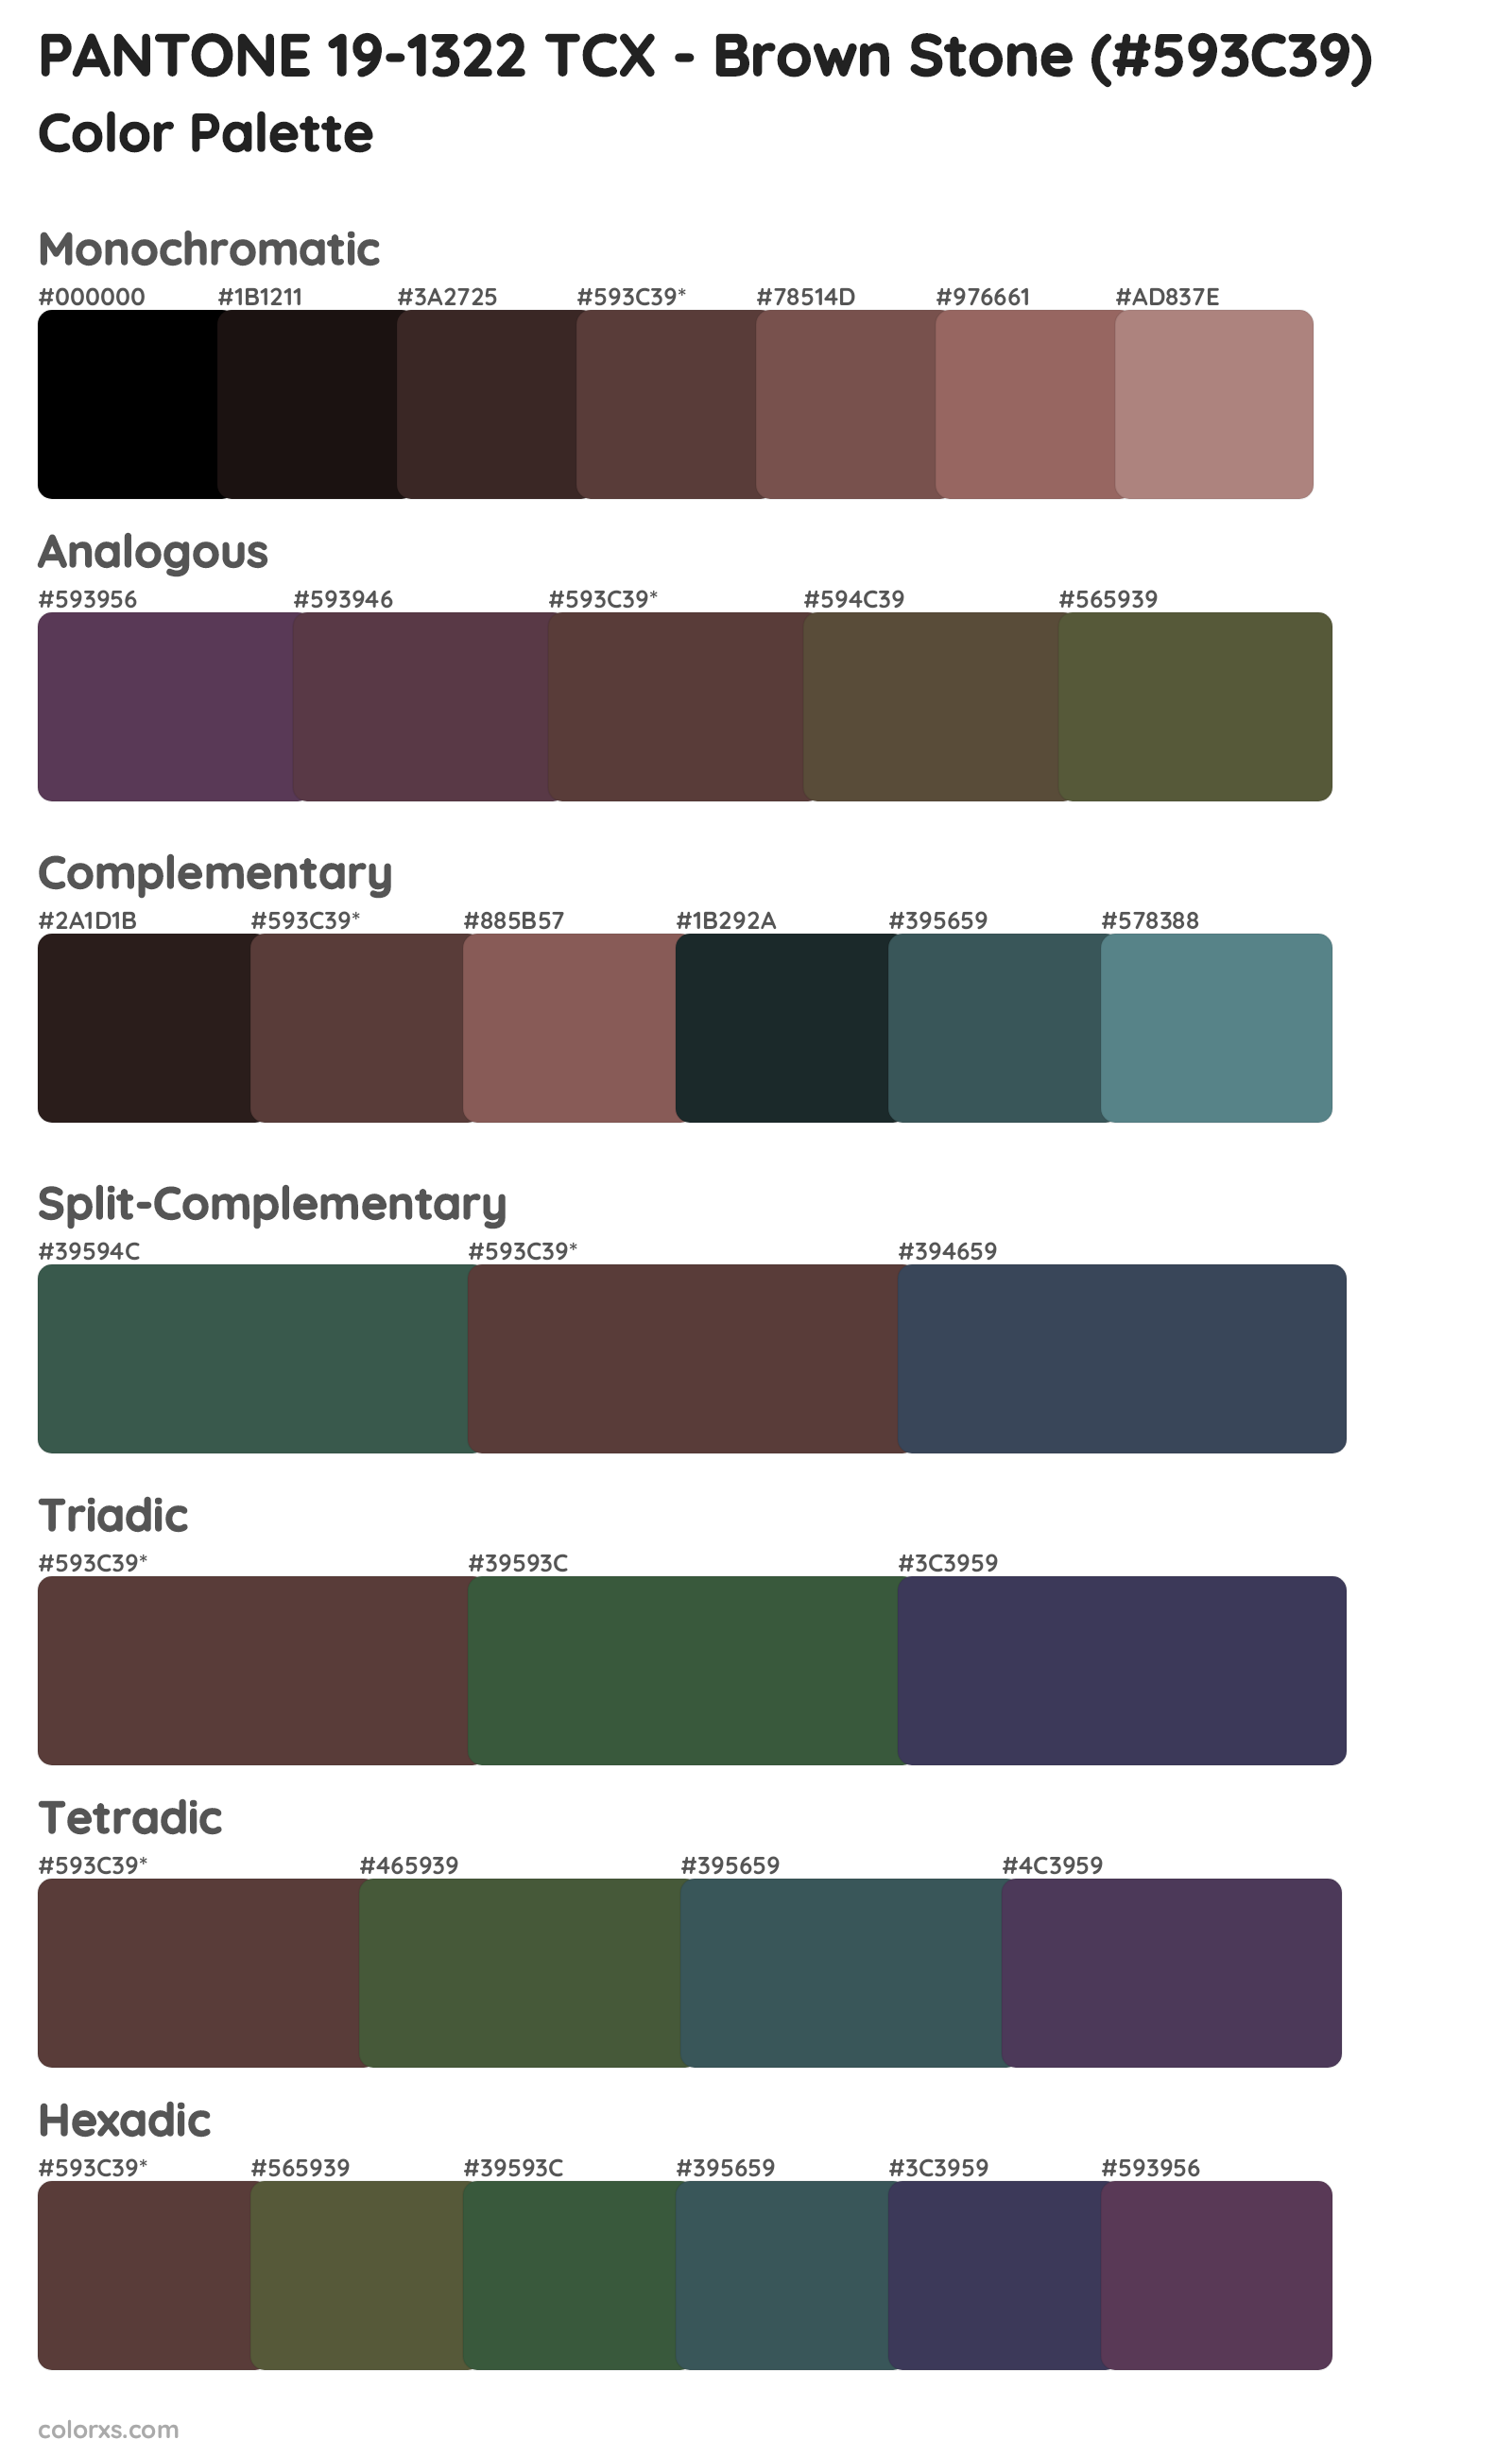 PANTONE 19-1322 TCX - Brown Stone Color Scheme Palettes